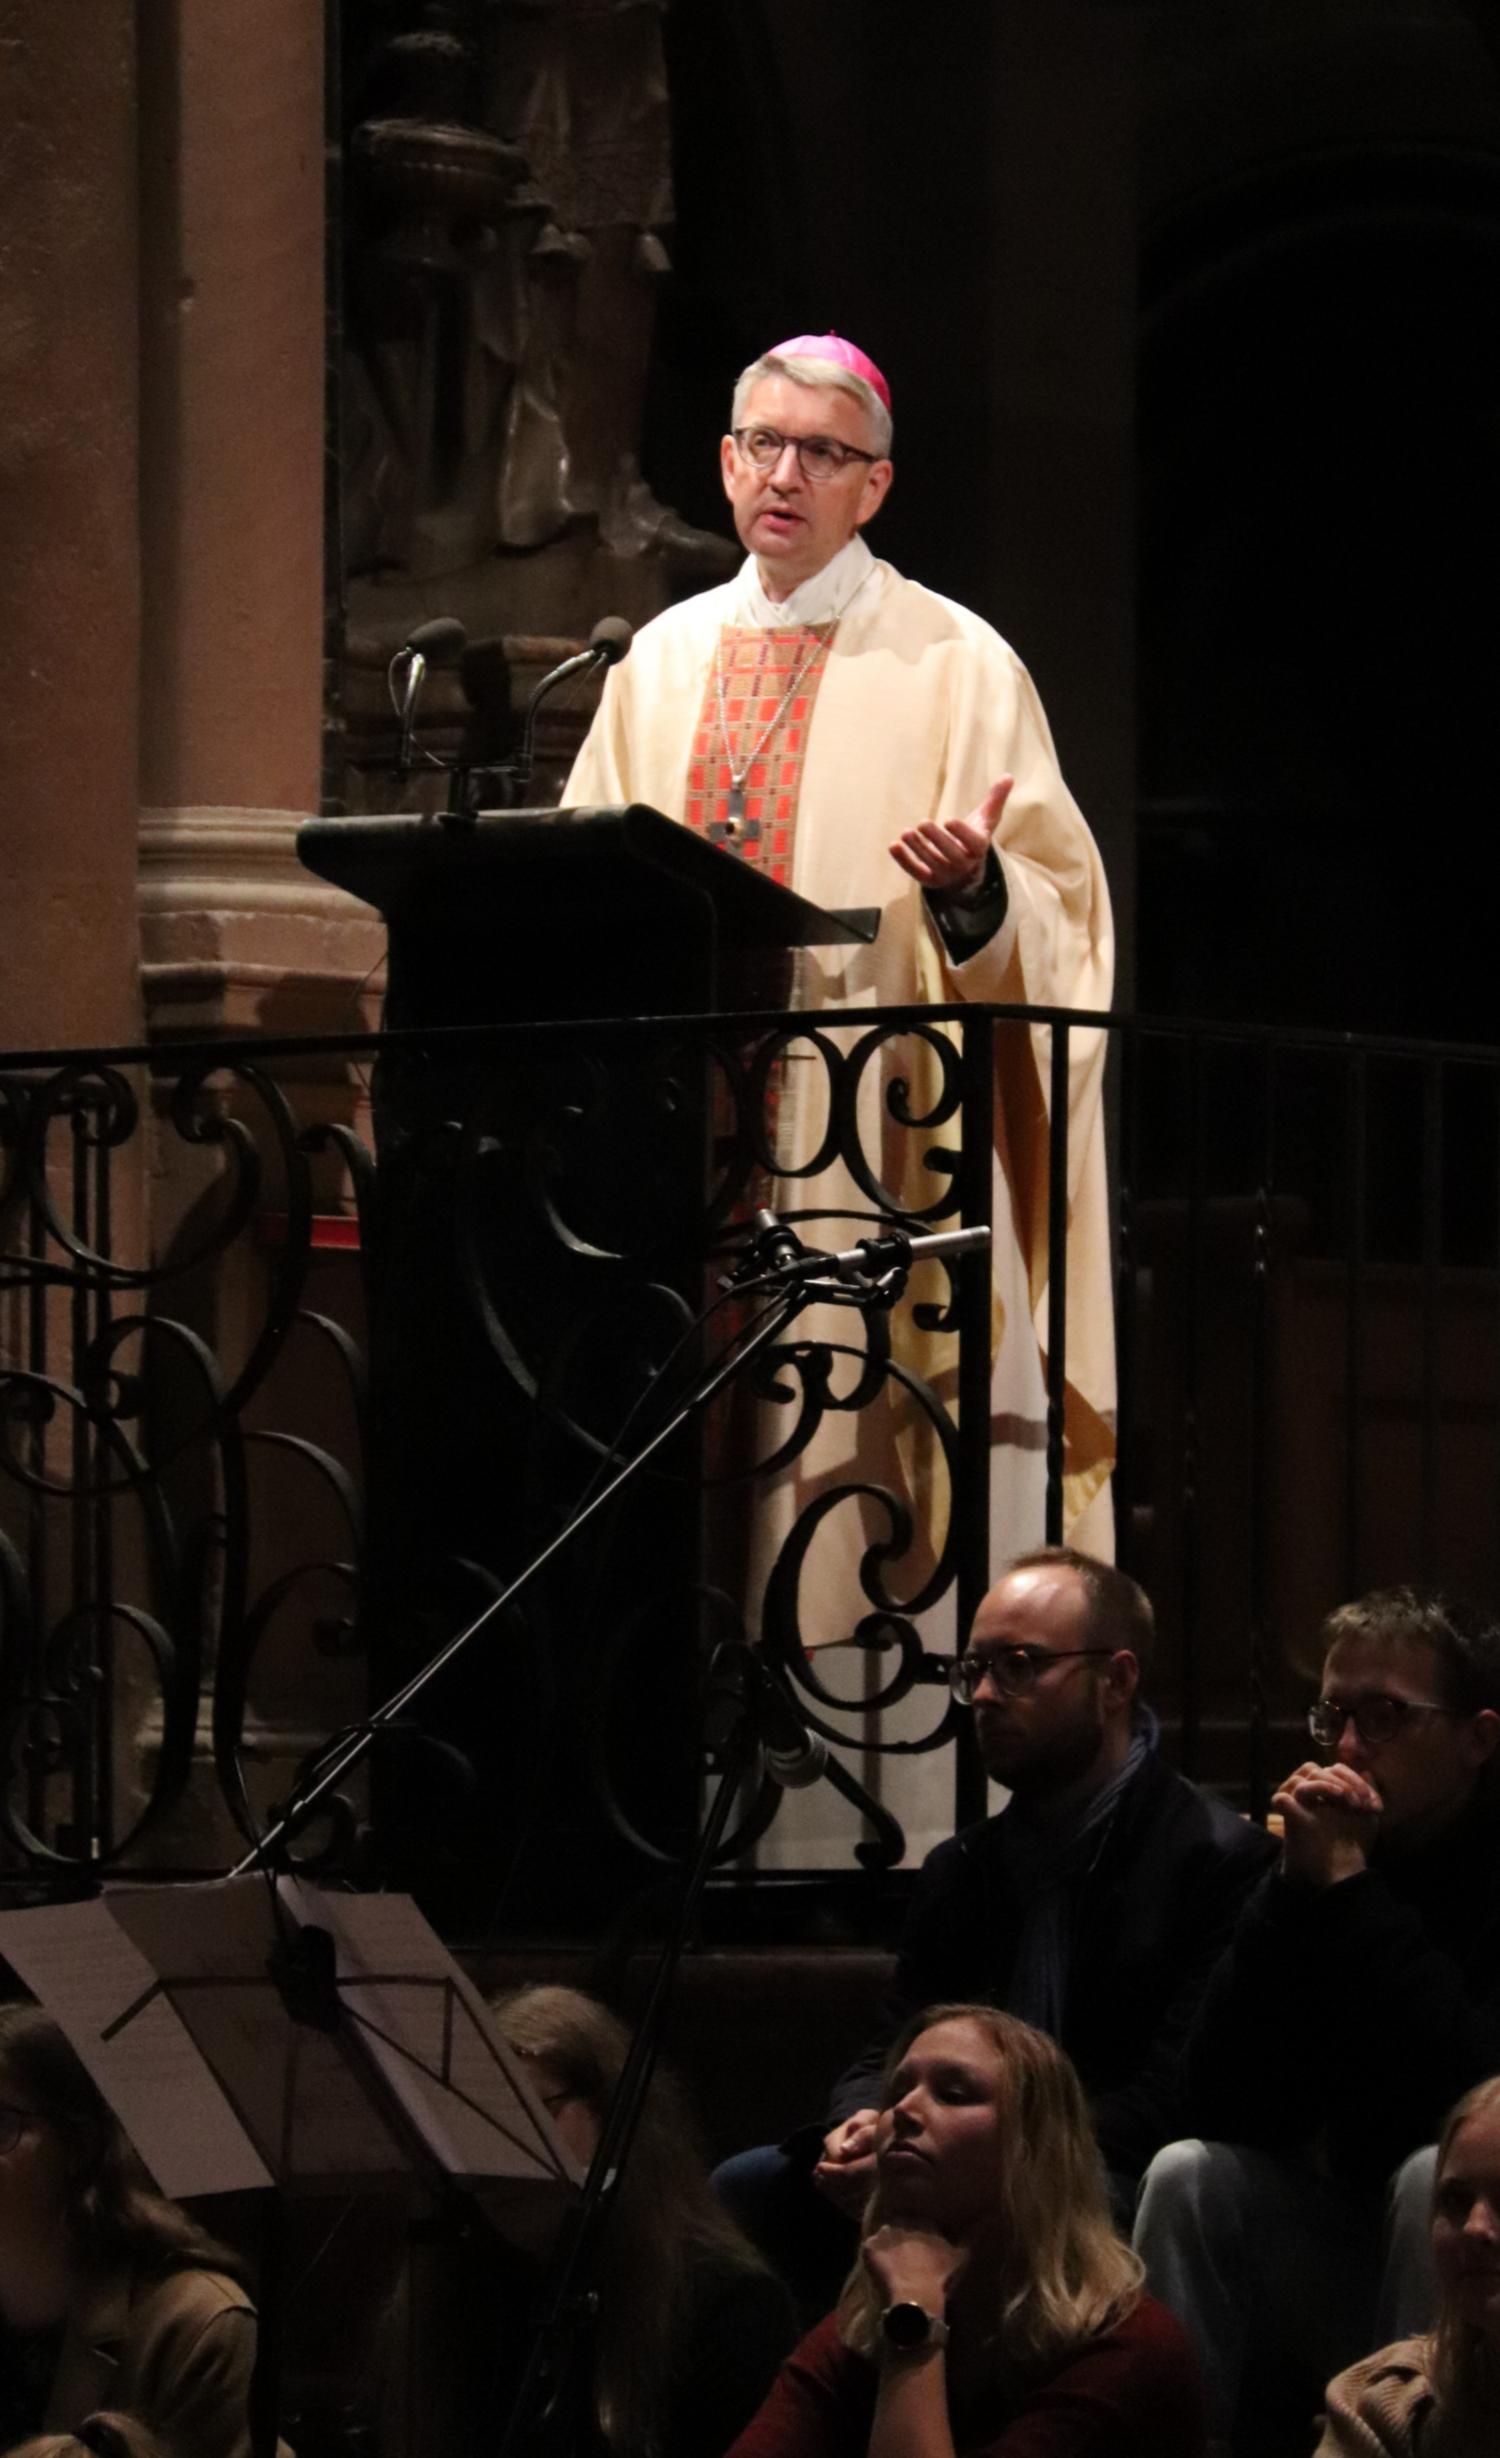 Bischof Peter Kohlgraf bei seiner Predigt anlässlich des 75. Jubiläums der KHG Mainz (c) Bistum Mainz/Hoffmann